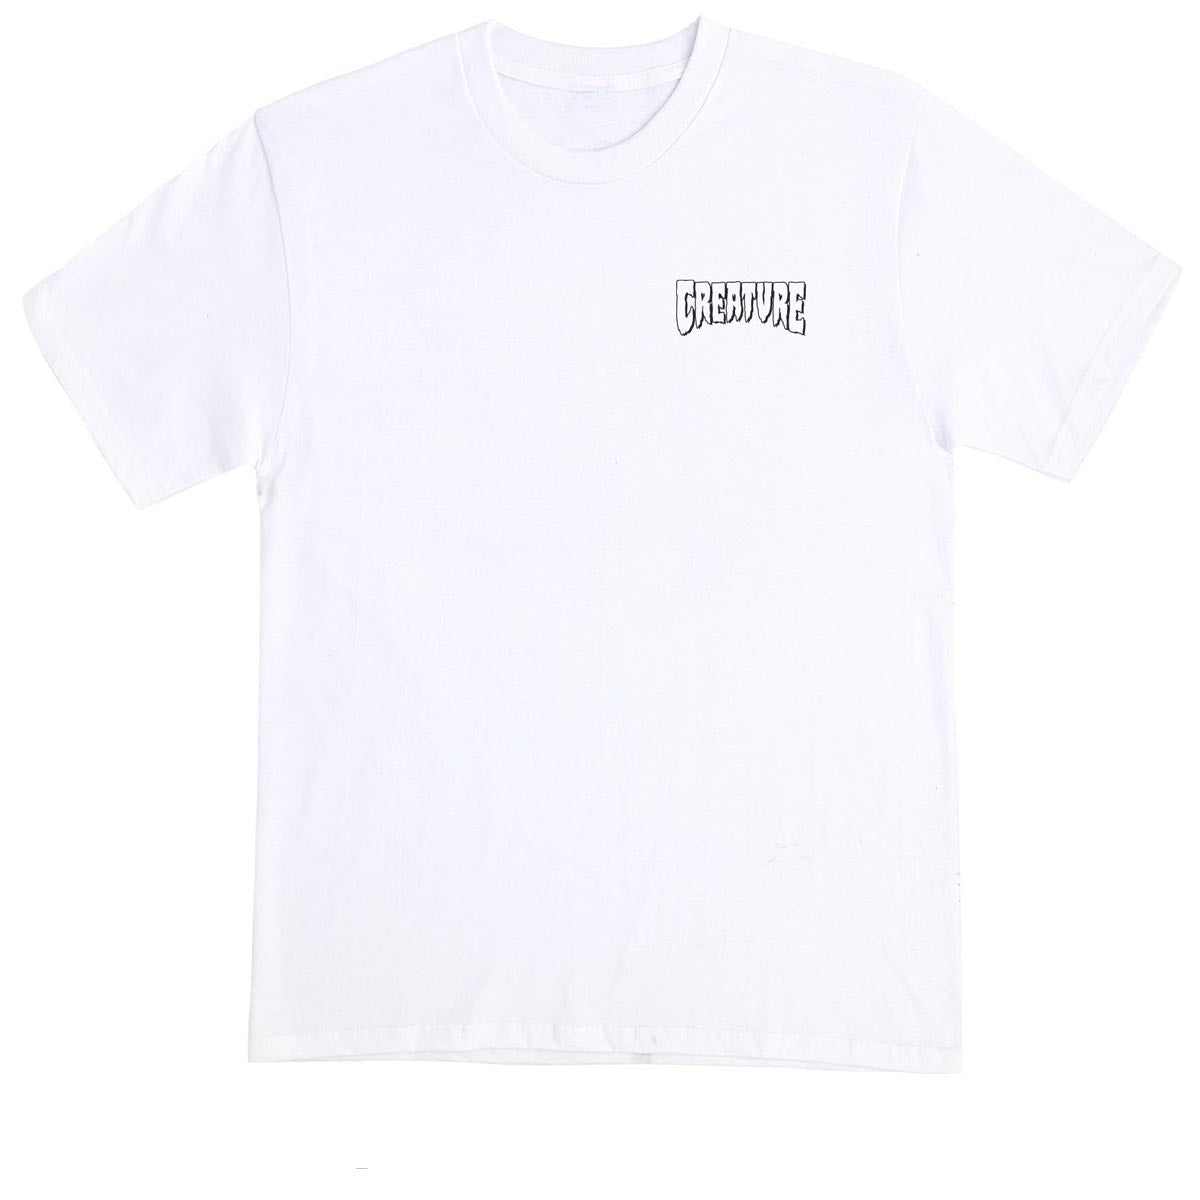 Creature Brainwash T-Shirt - White image 2